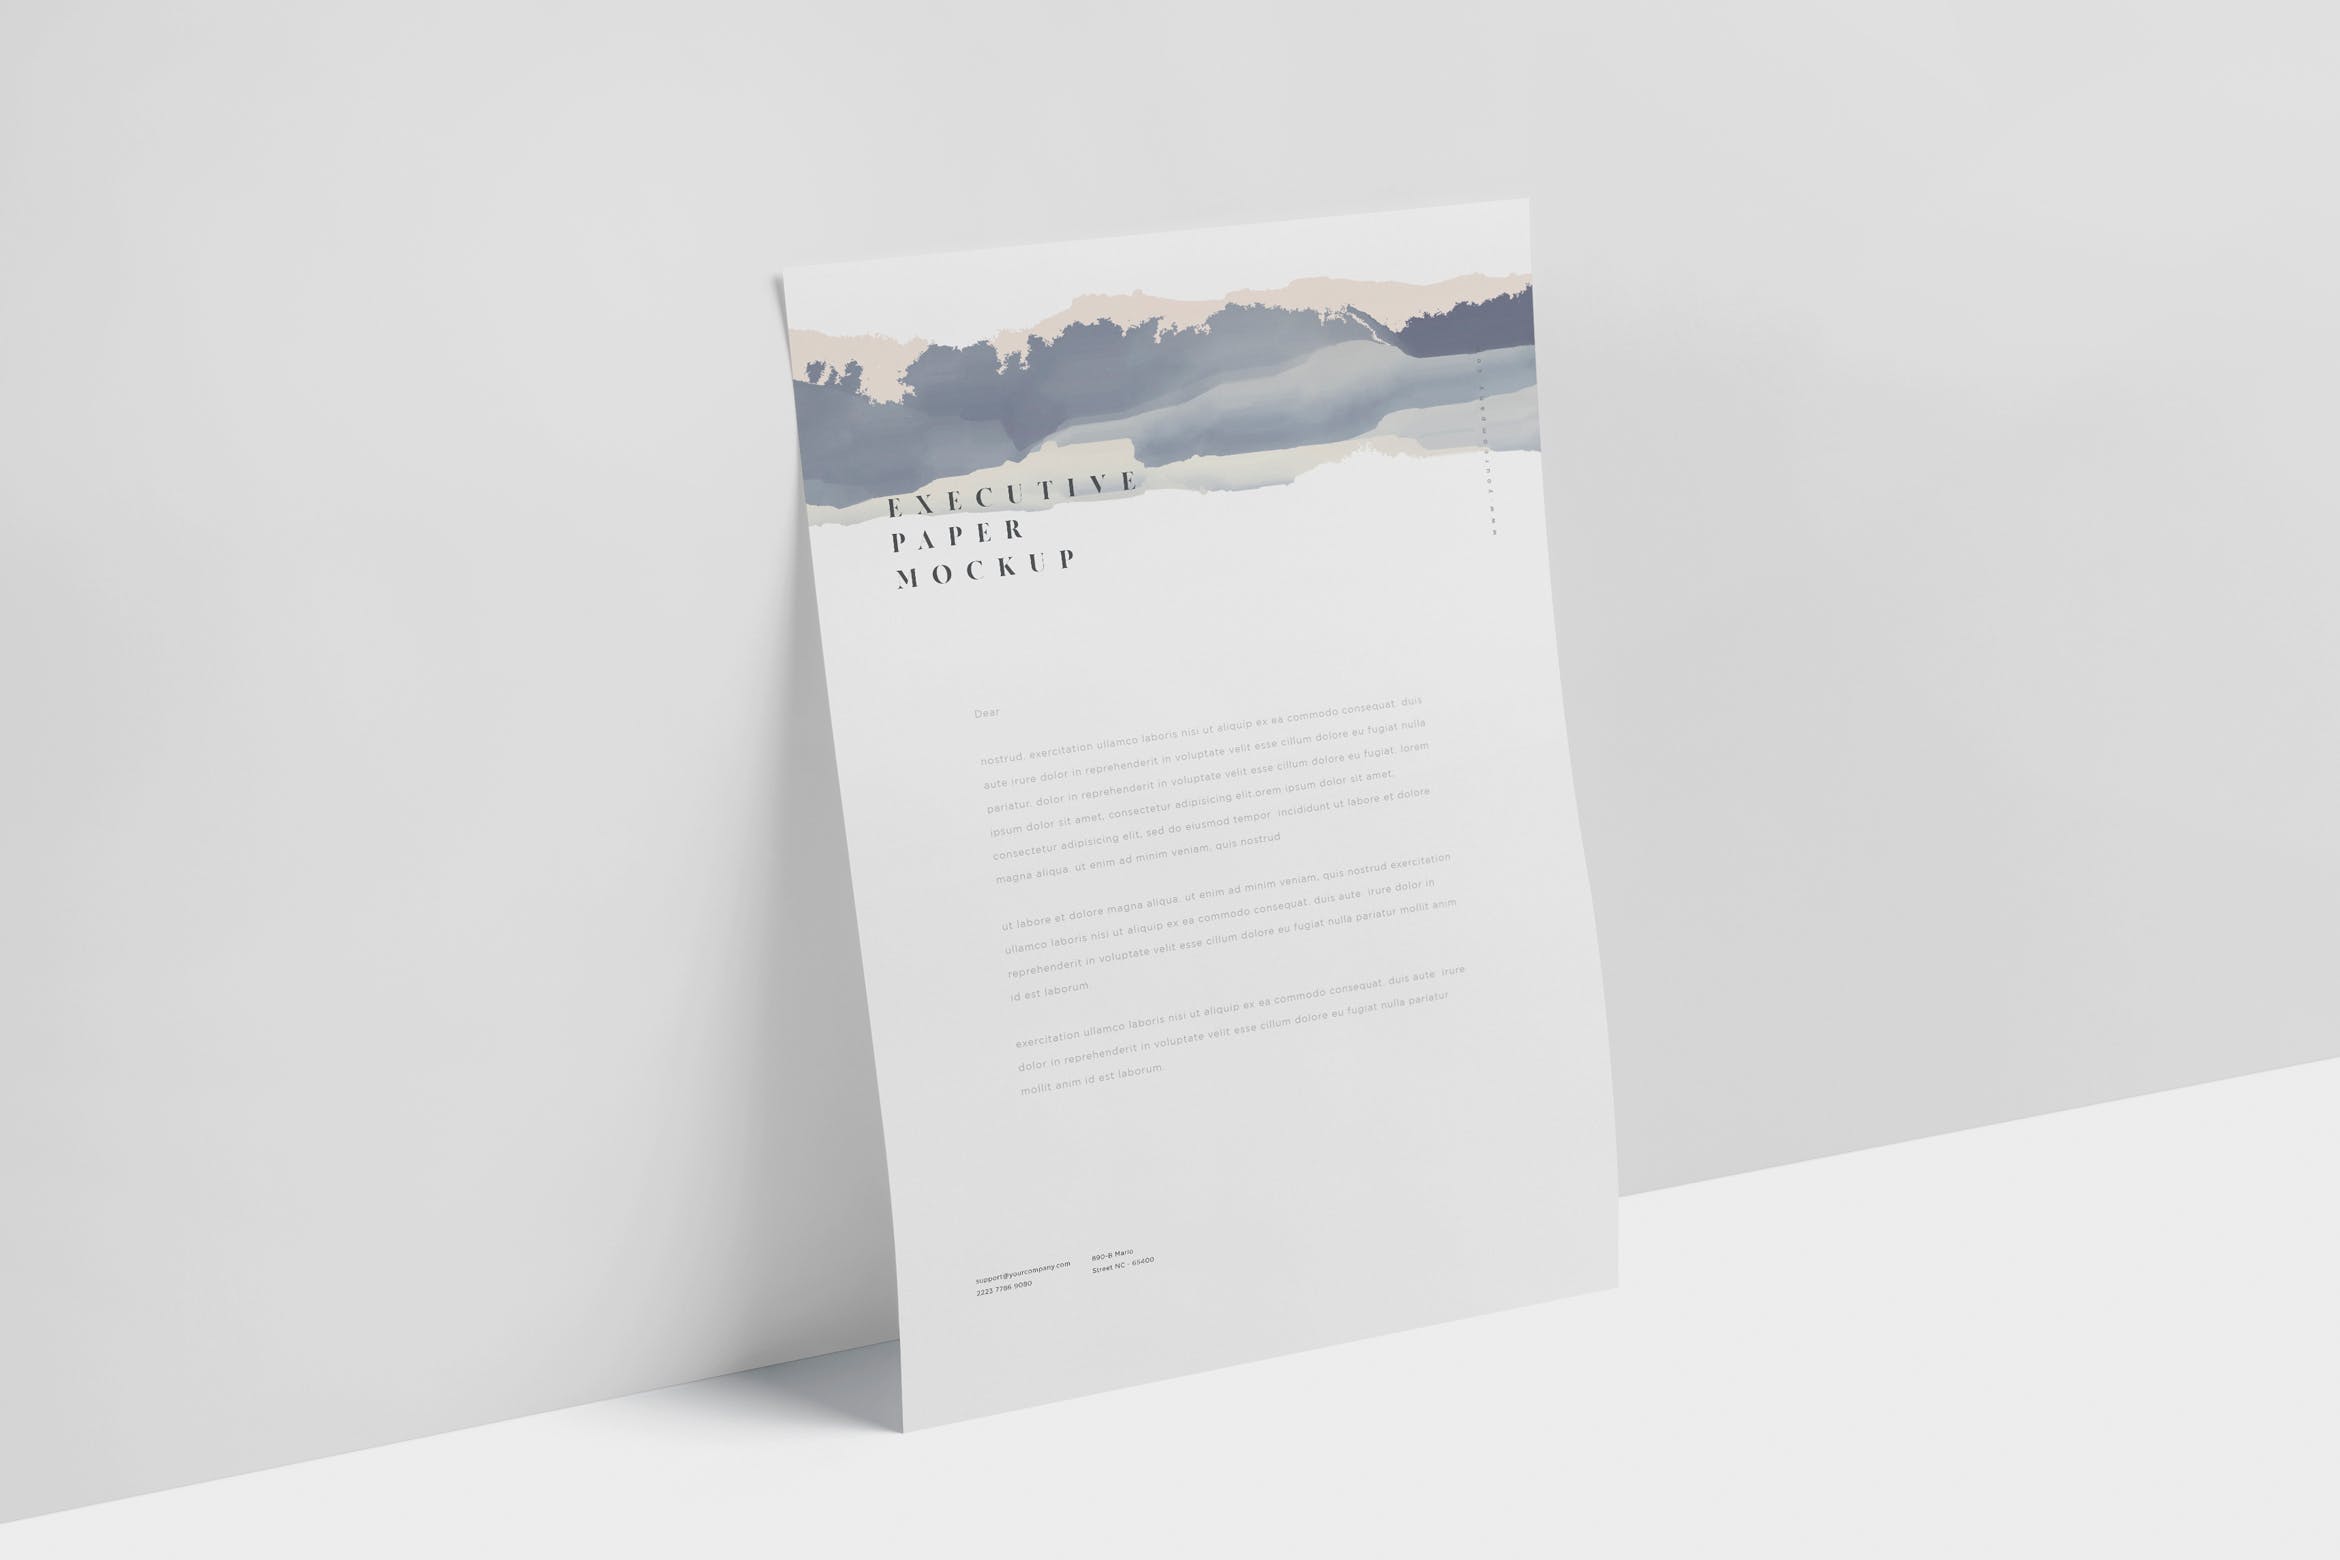 企业宣传单张设计效果图样机大洋岛精选 Executive Paper Mockup – 7×10 Inch Size插图